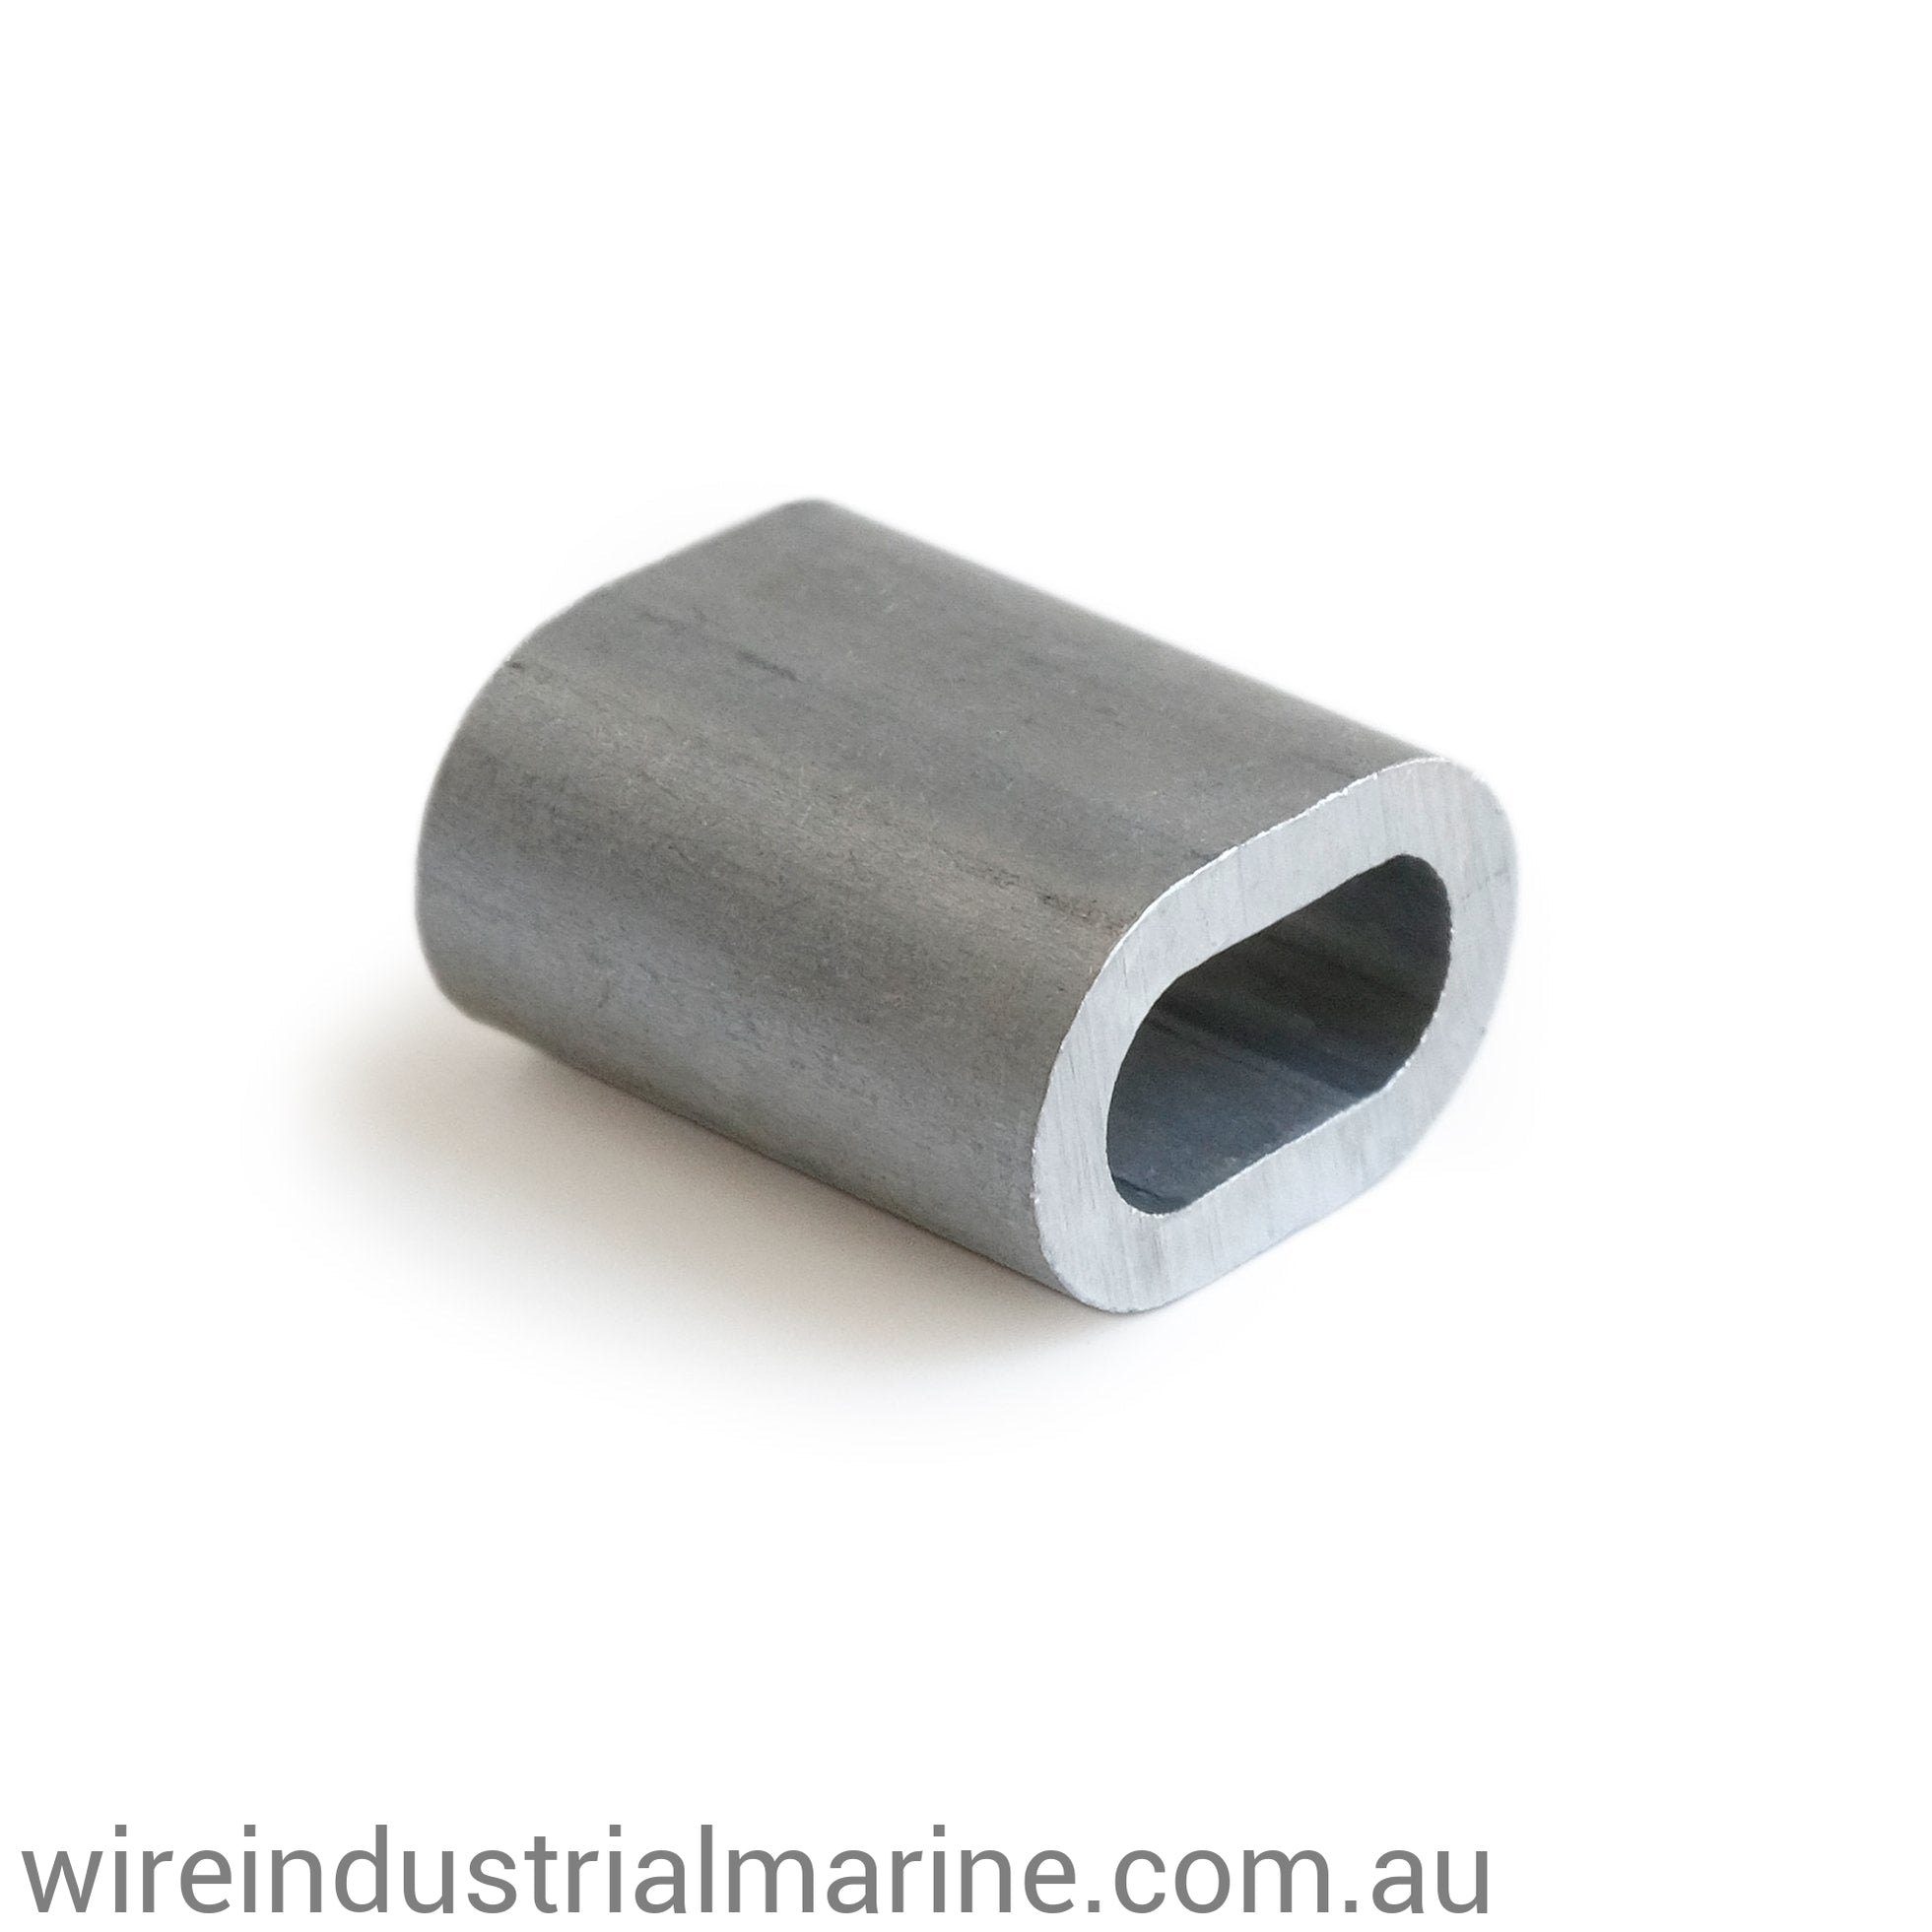 4mm ALLOY-DIN Code machine press ferrule for galvanised wire-wireindustrialmarine